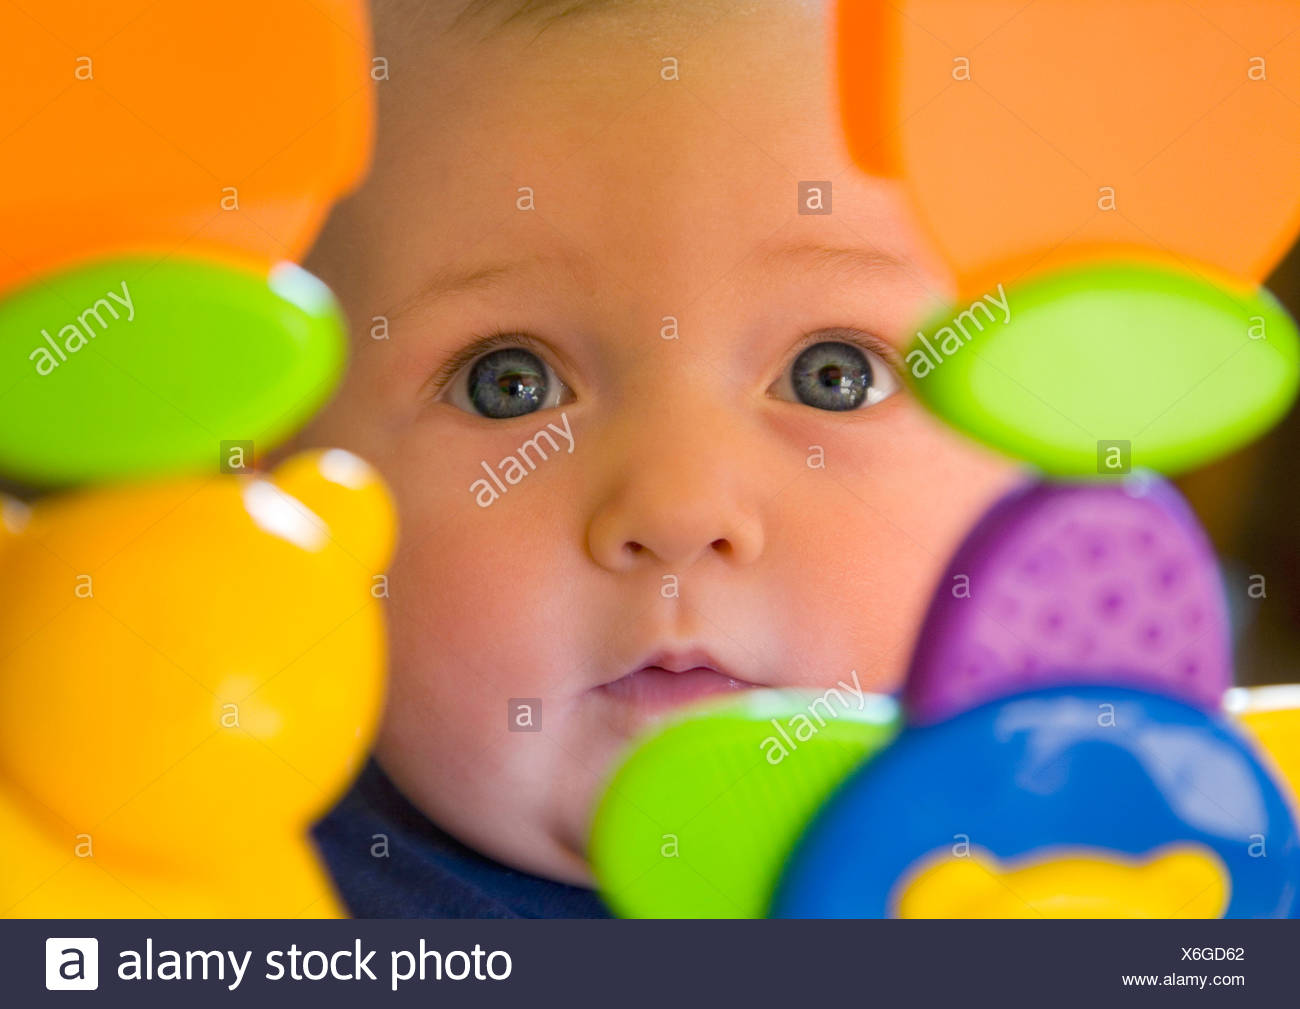 Bebe Fille 6 Mois Du Tout Petit Avec Des Yeux Bleus A La Recherche Par Le Biais De Jouets En Plastique Photo Stock Alamy